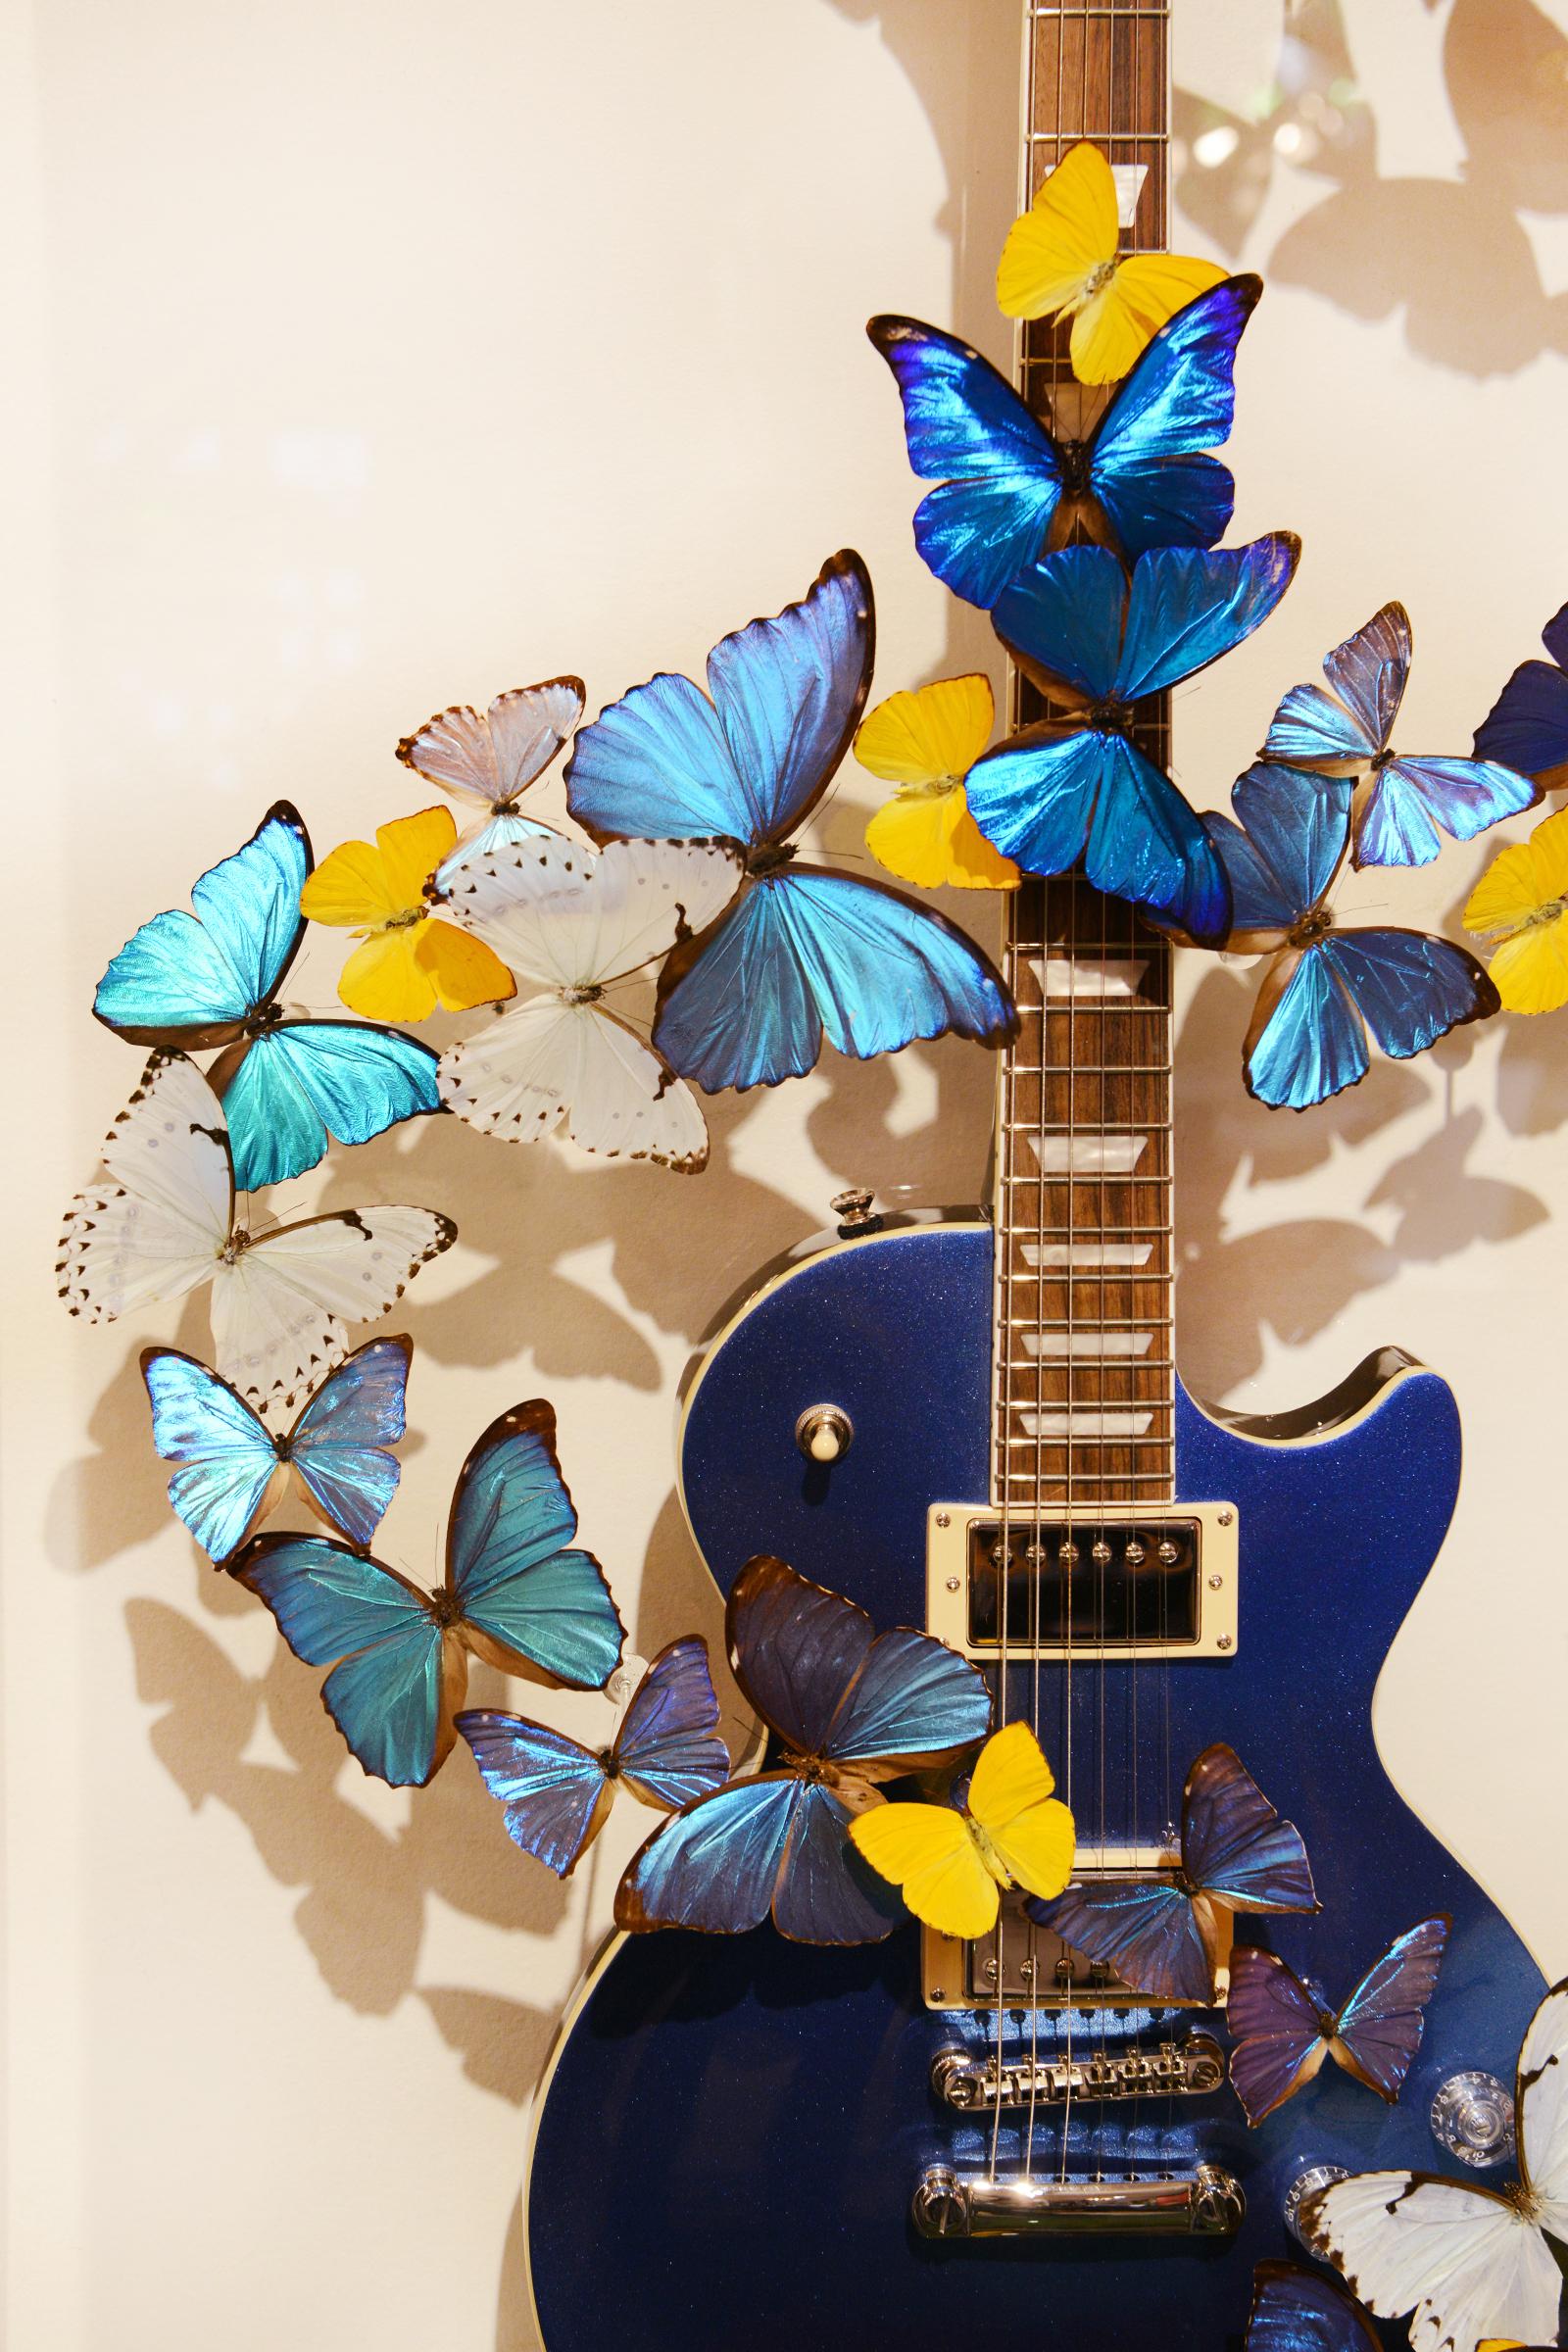 Glass Les Paul & Blue Butterflies Guitar For Sale